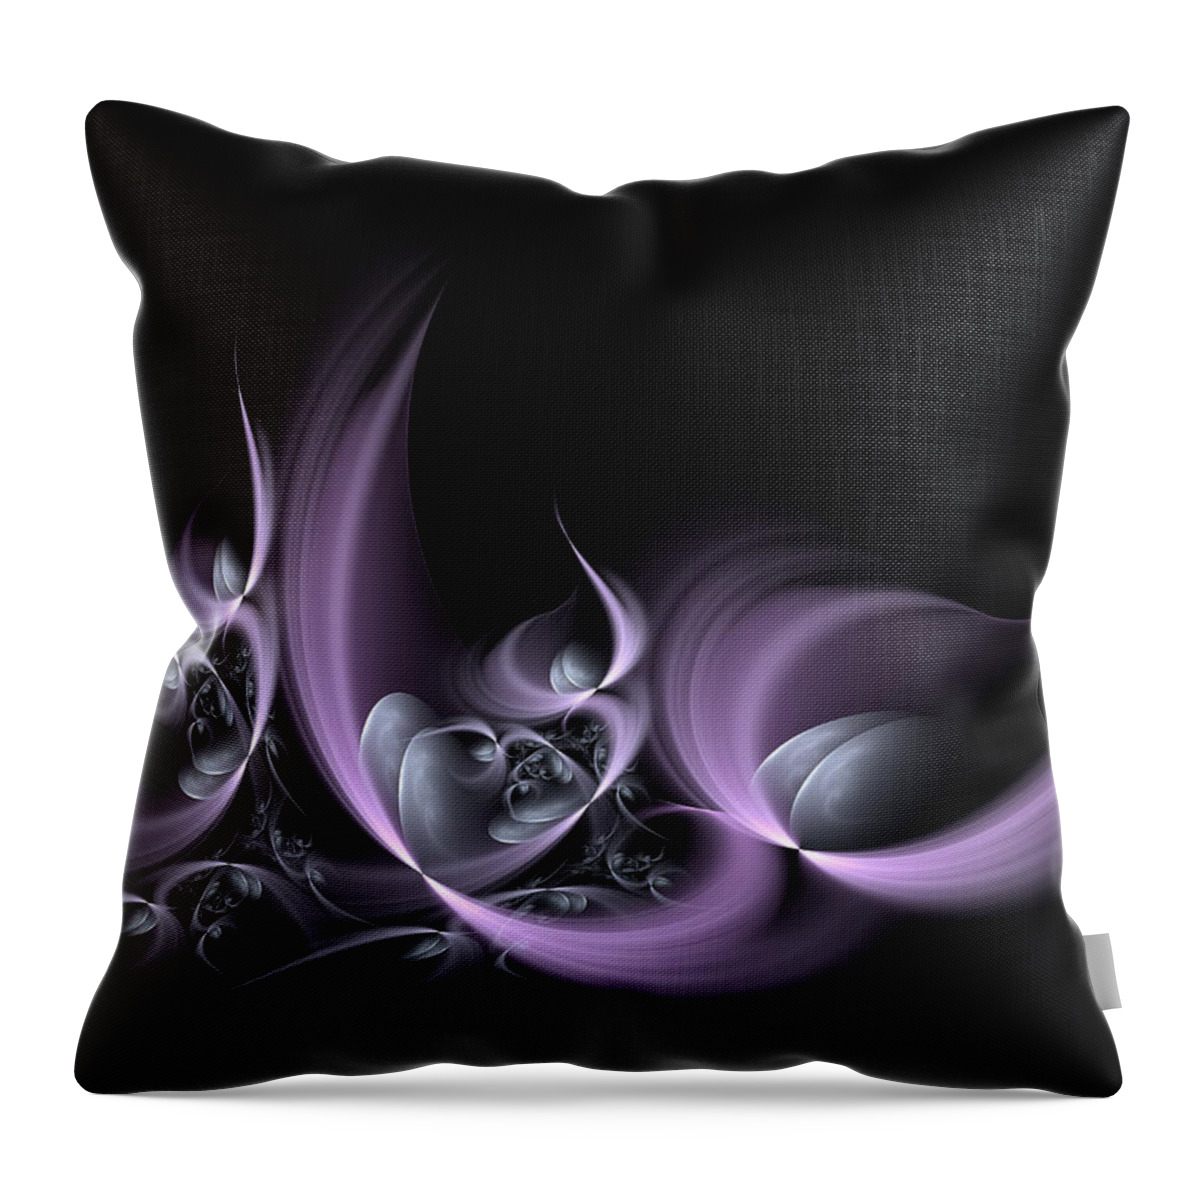 Fractal Throw Pillow featuring the digital art Fractal Fruits by Gabiw Art